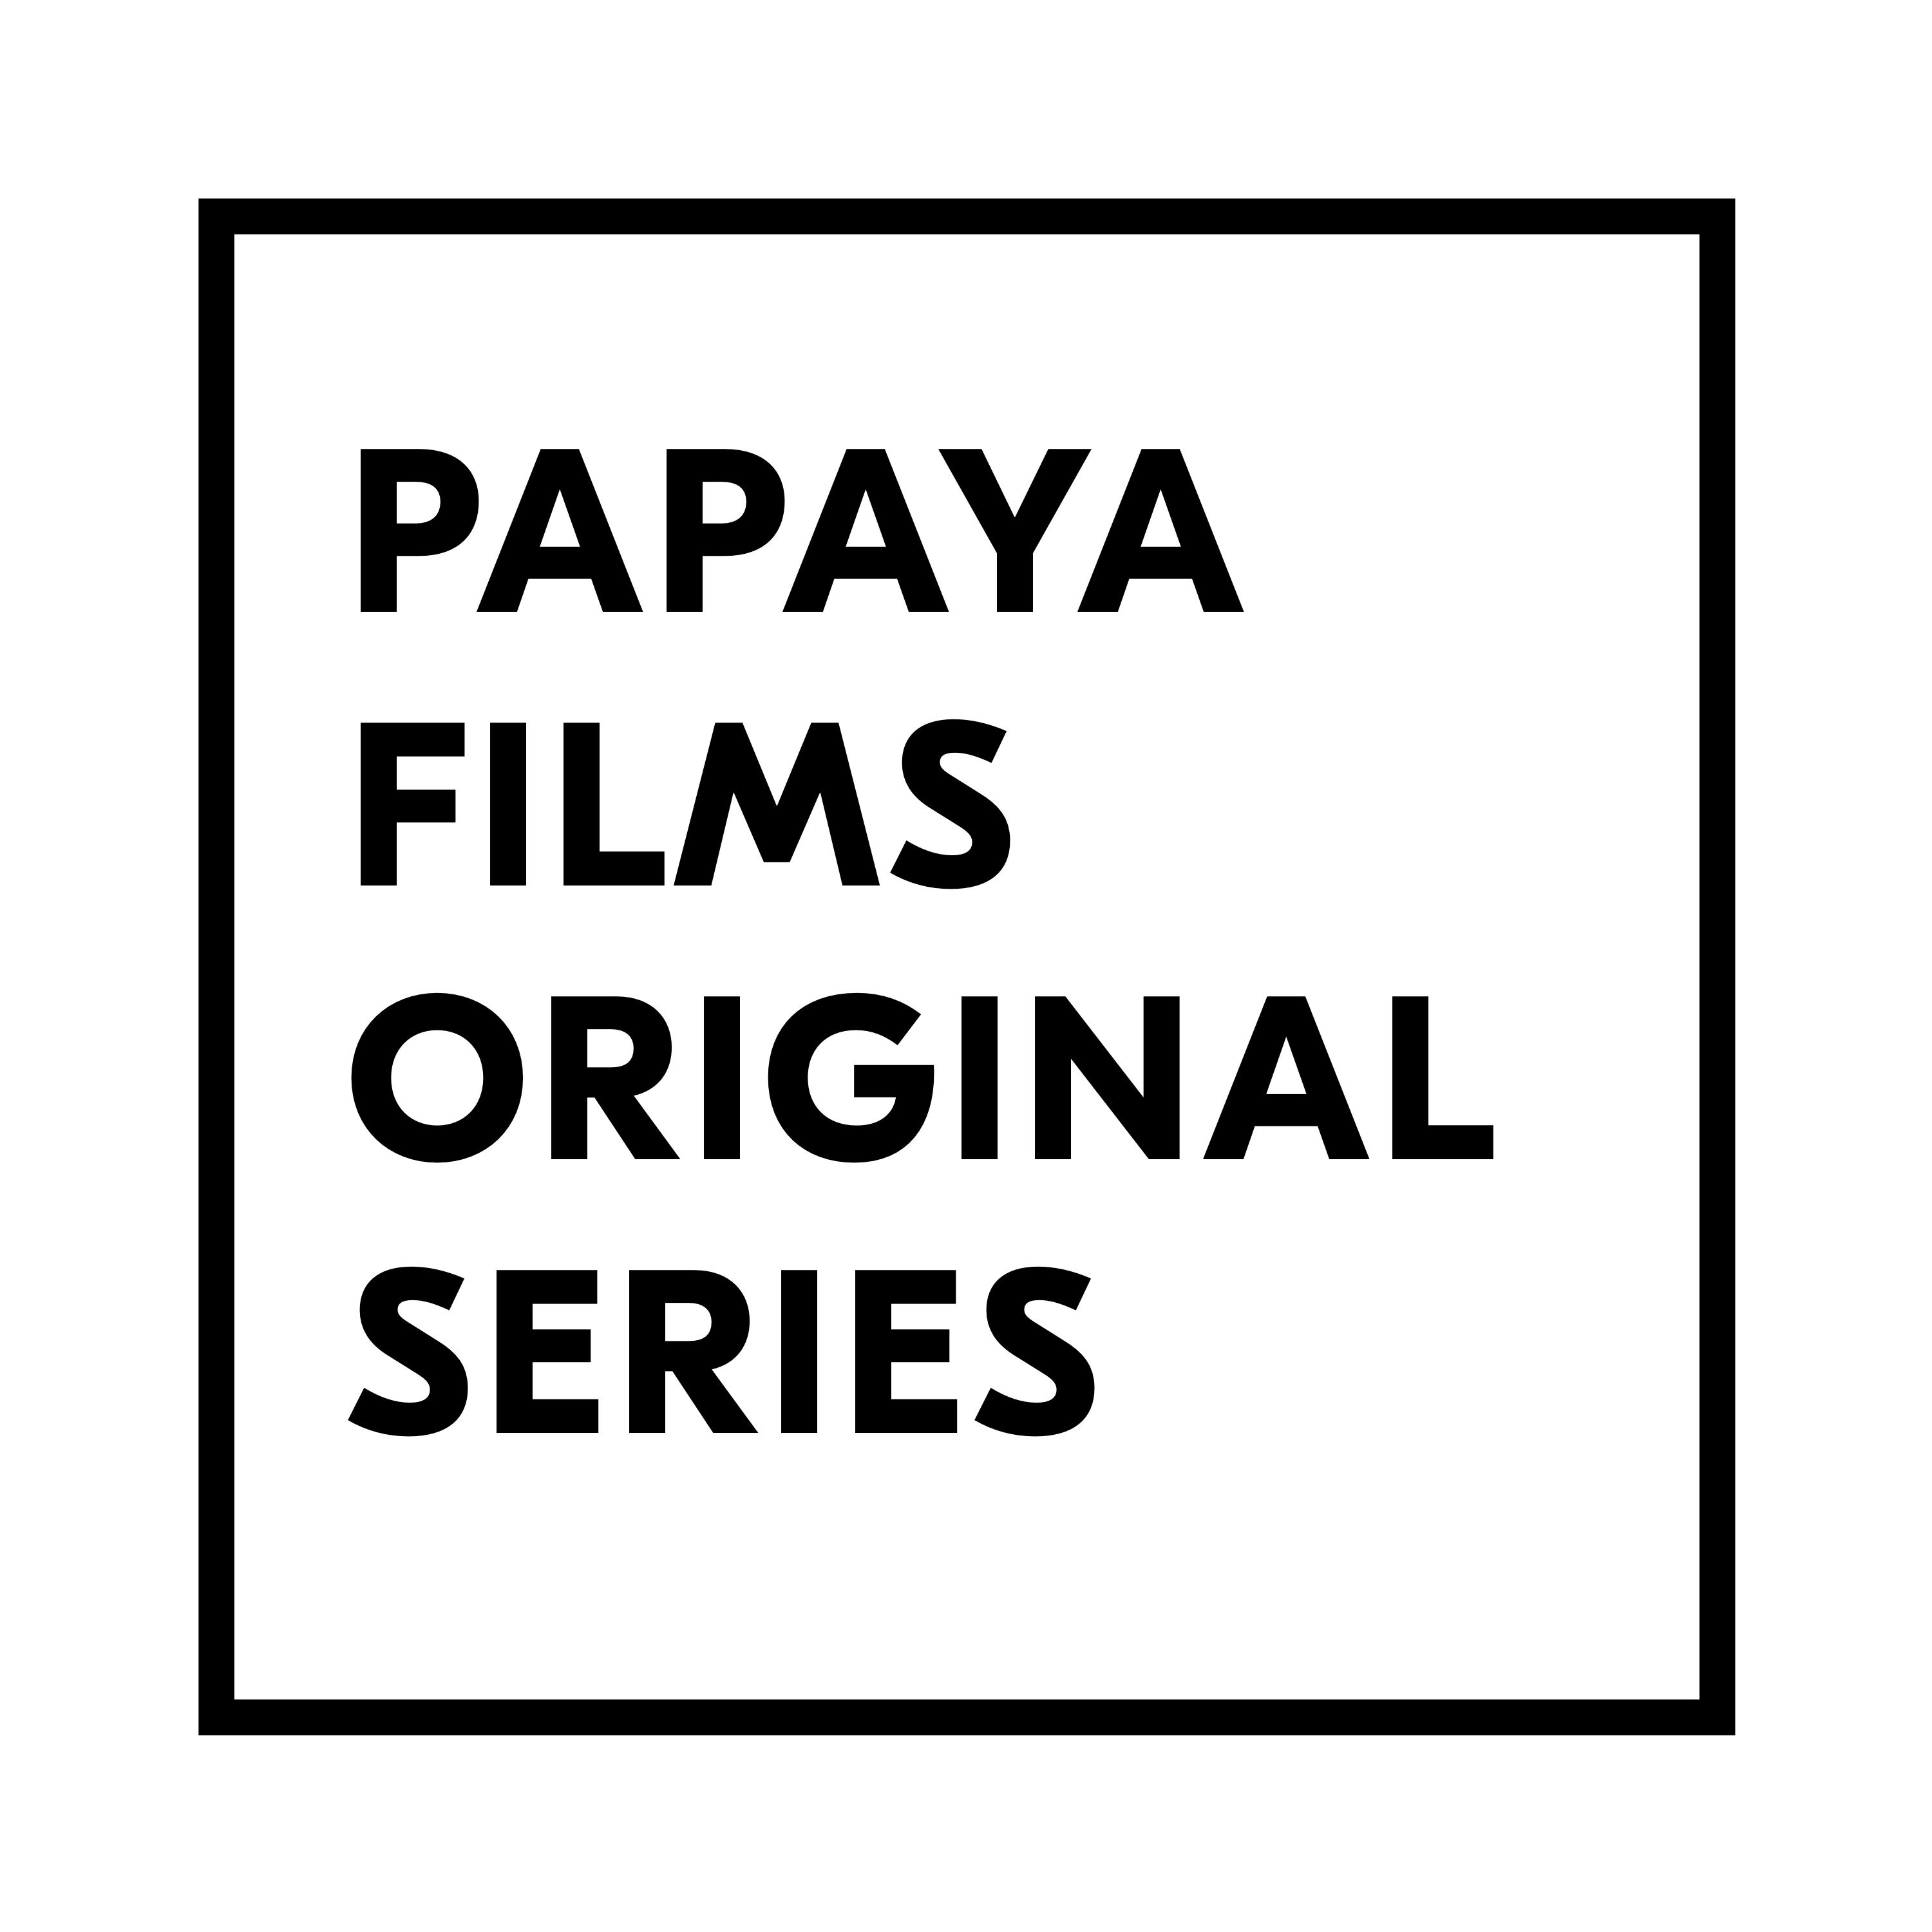 Papaya Films Original Series